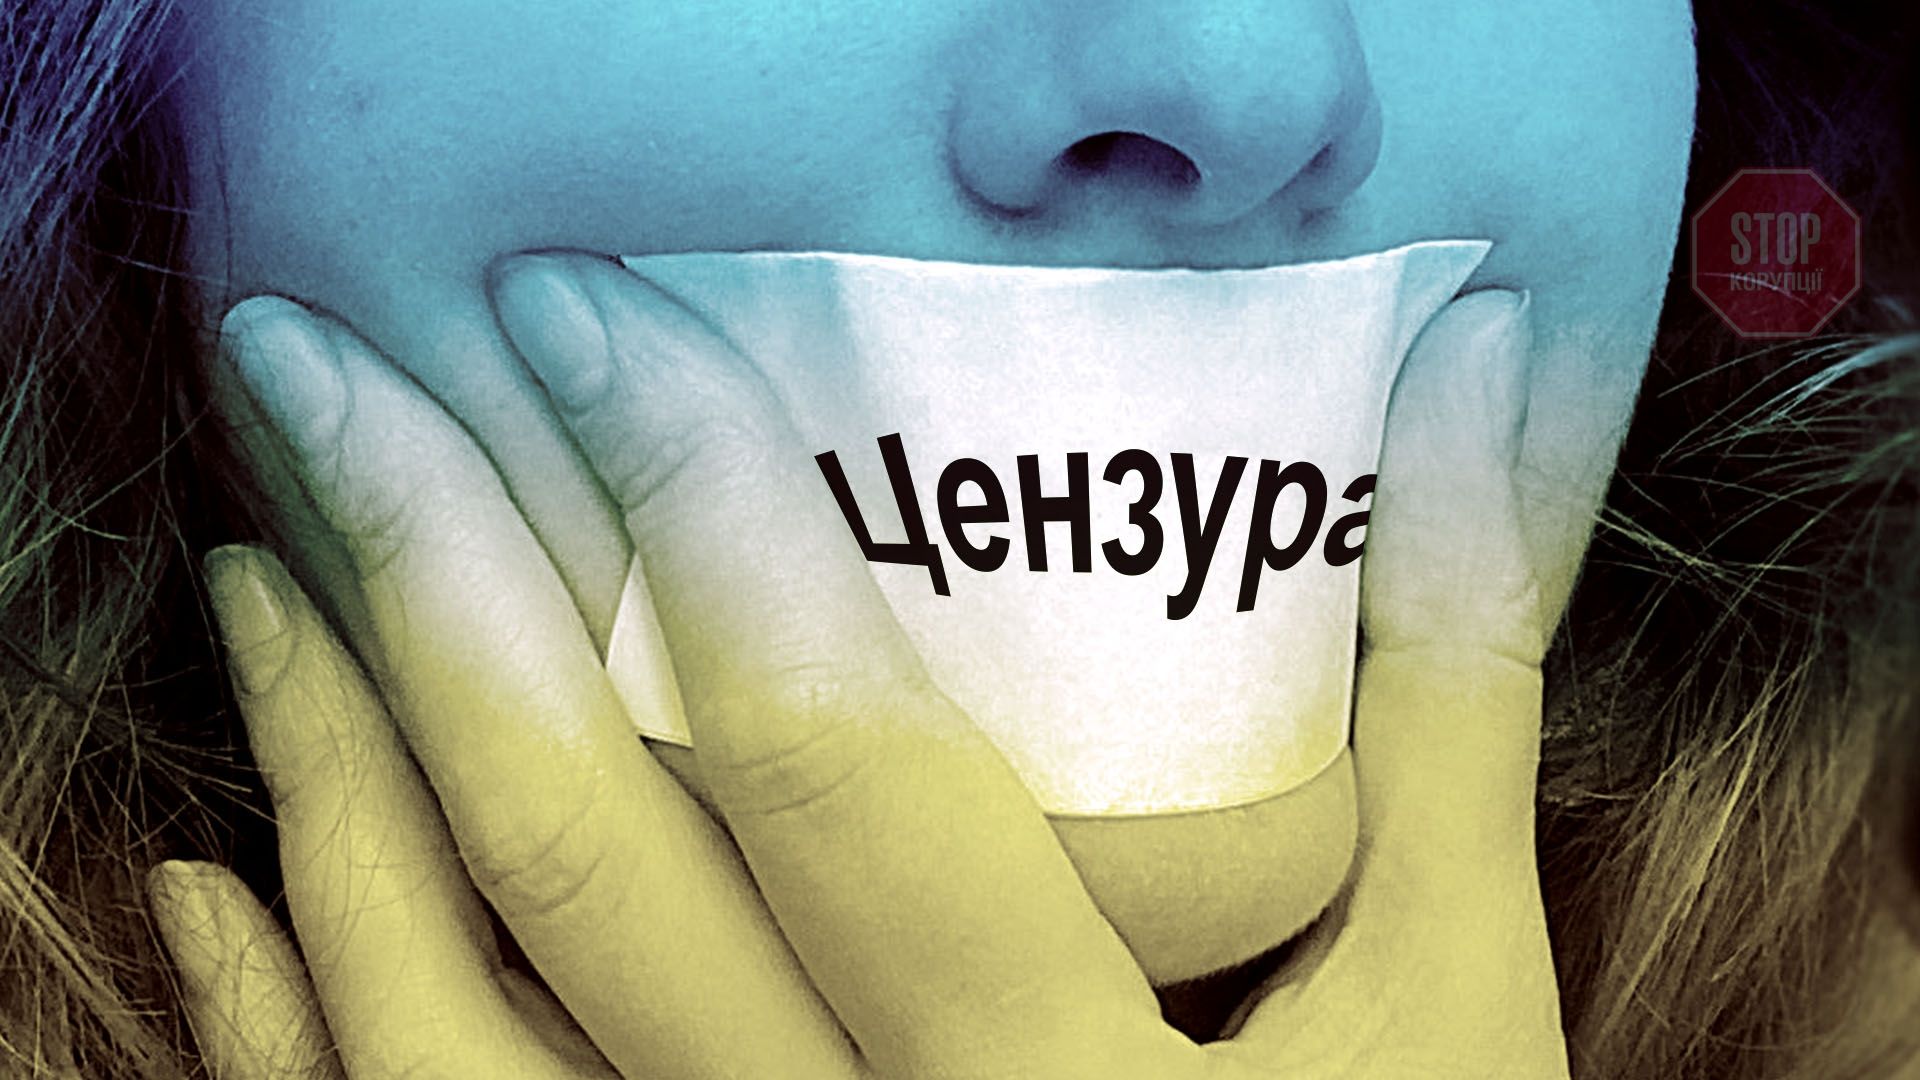 Закрыть сми. СМИ закрывают рот. Заткнуть рот СМИ. Цензура на Украине. Украина закрытый рот.